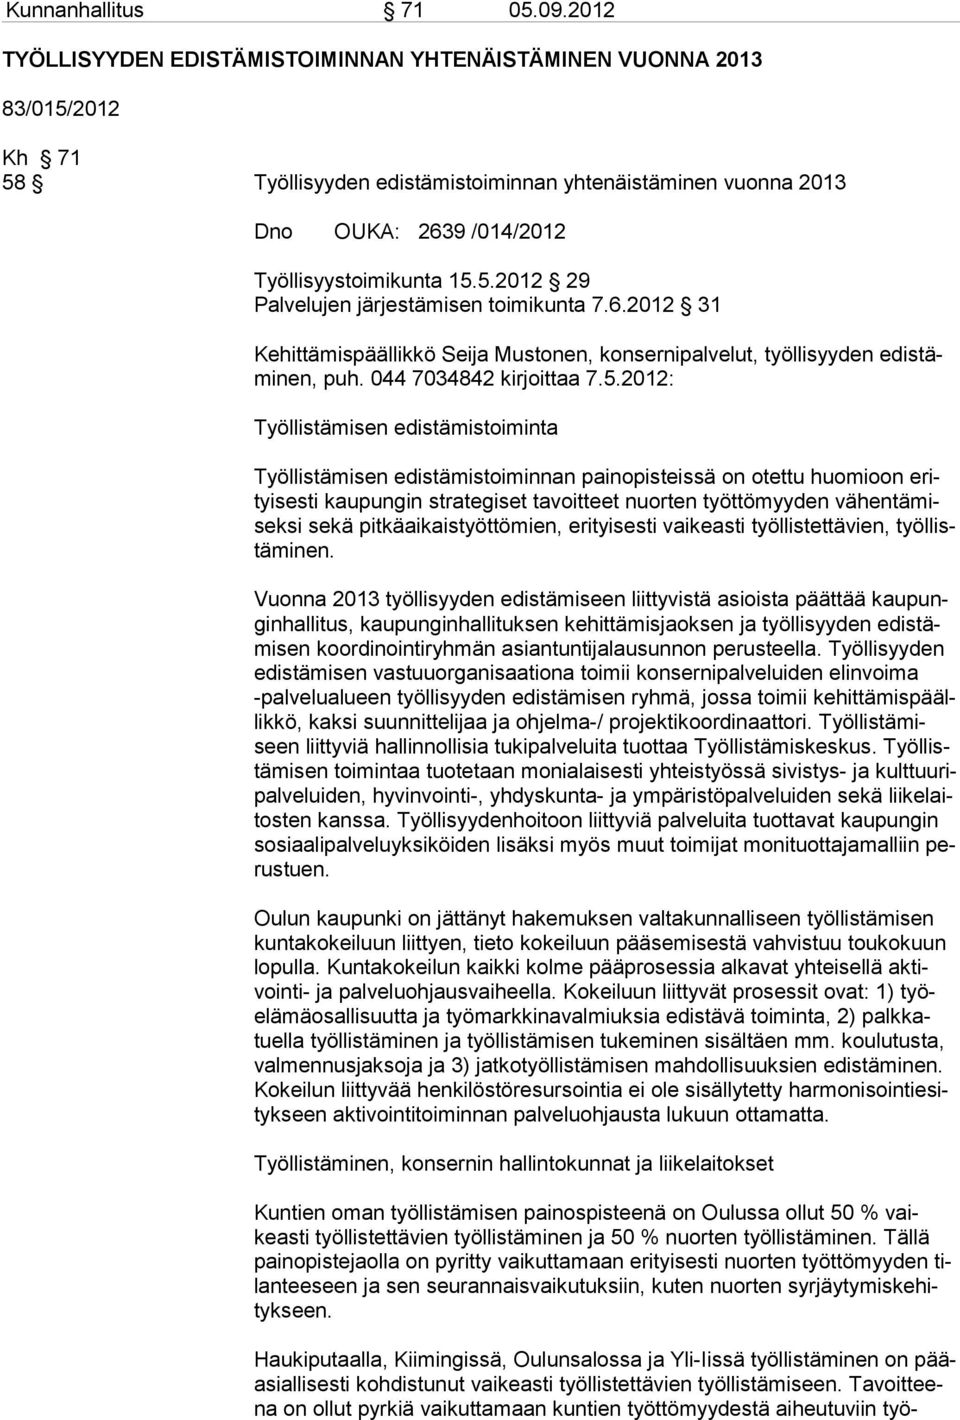 6.2012 31 Kehittämispäällikkö Seija Mustonen, konsernipalvelut, työllisyyden edistäminen, puh. 044 7034842 kirjoittaa 7.5.